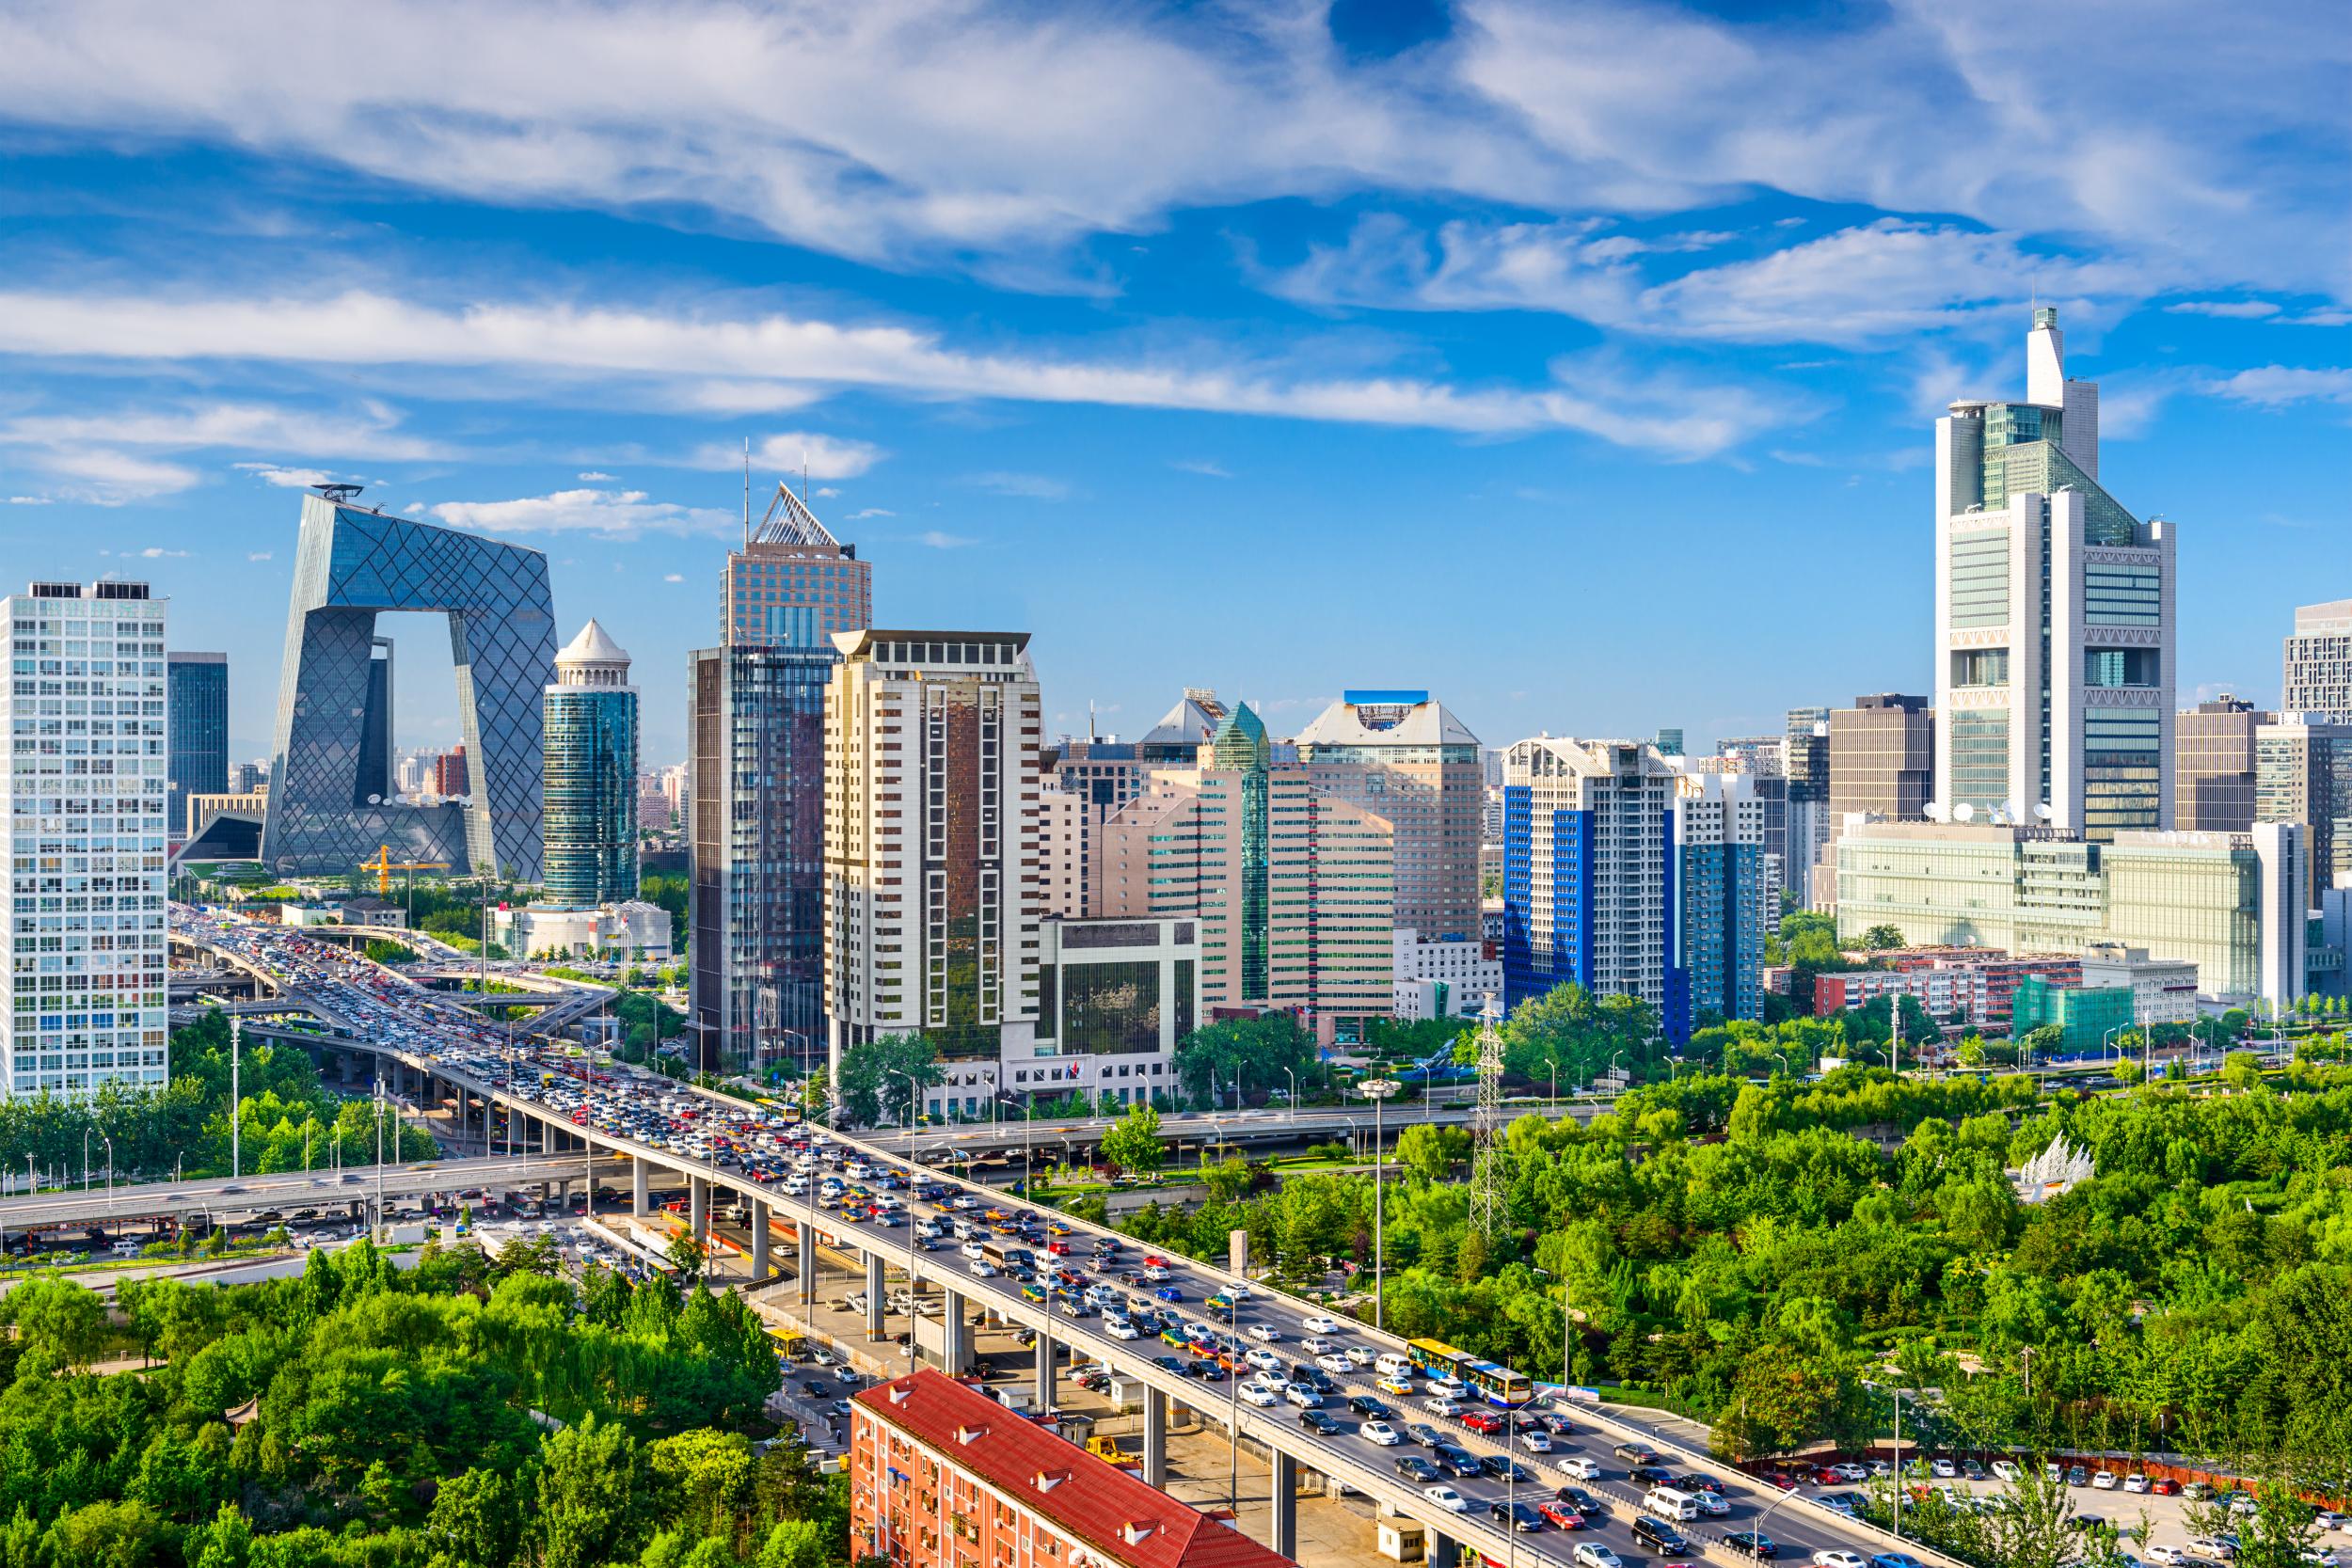 Beijing’s downtown skyline, including Rem Koolhas‘ trouser-leg-like CCTV Tower